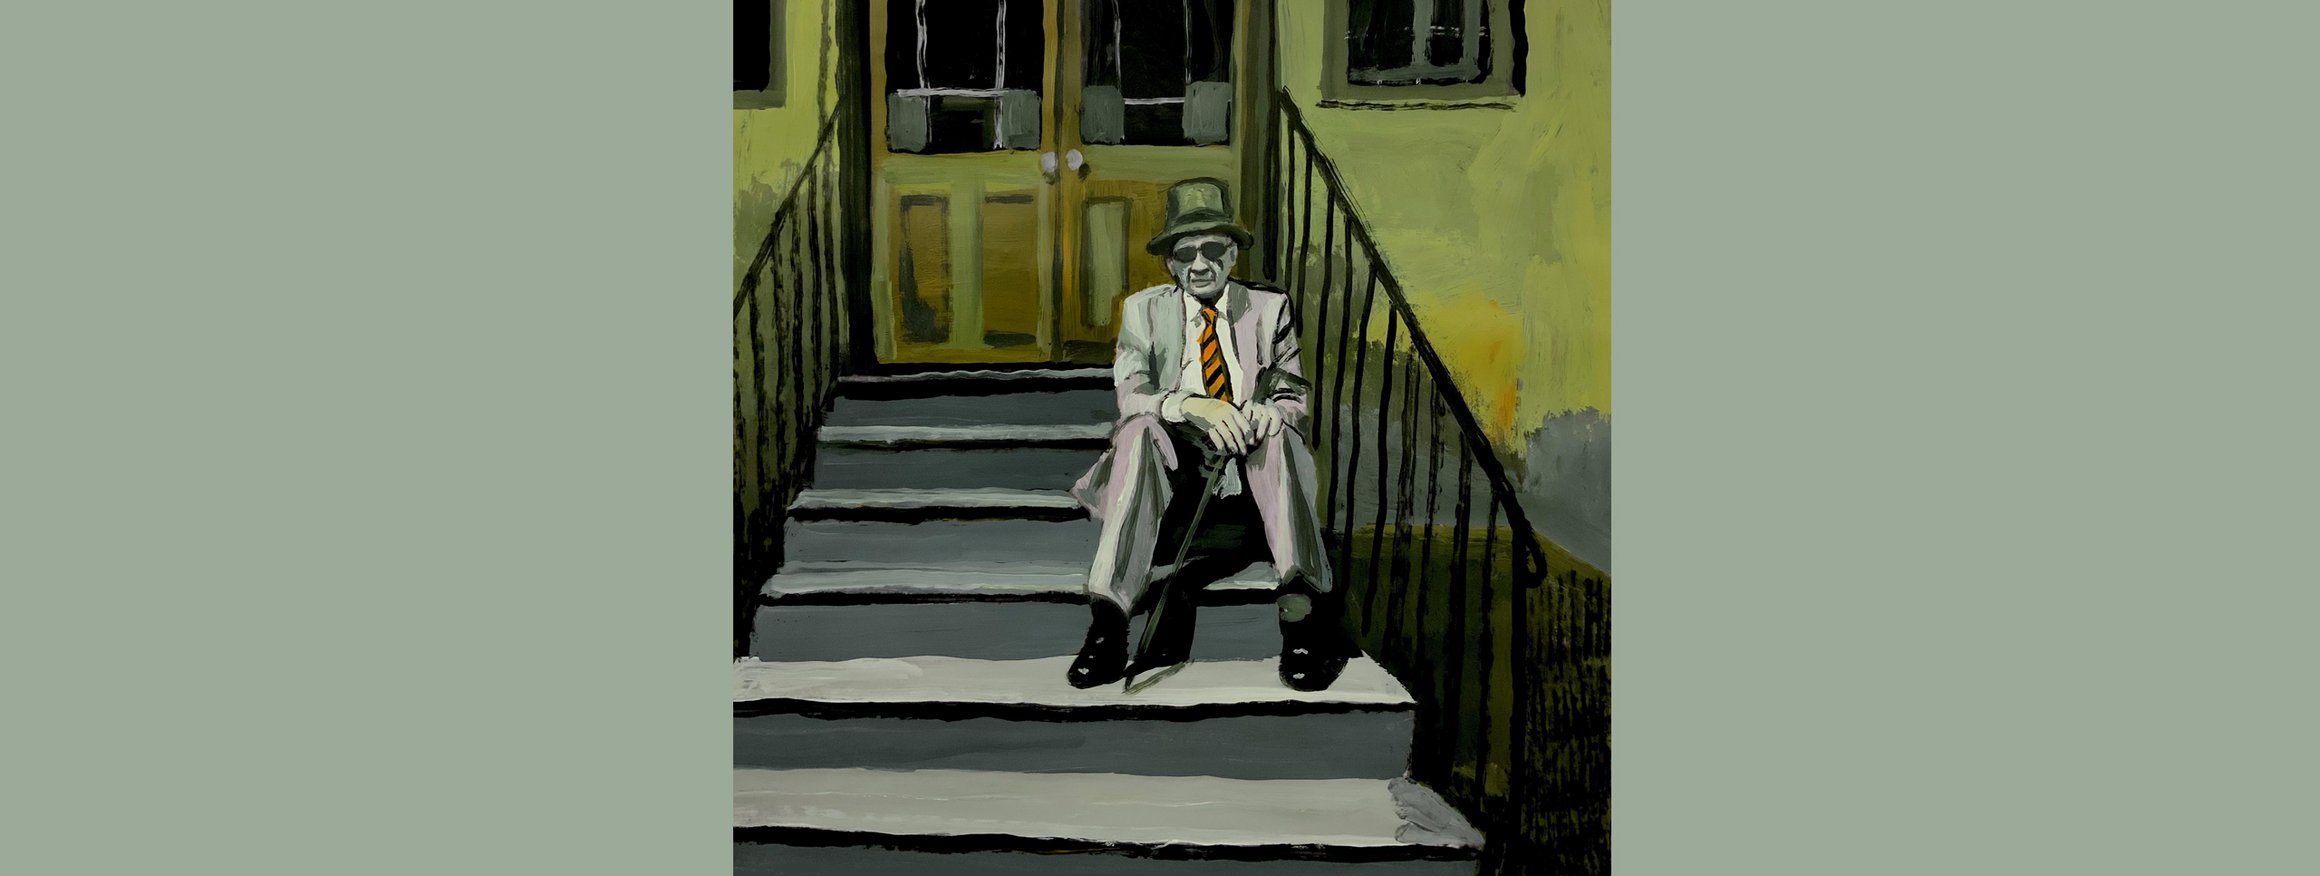 Ein älterer Mann sitzt im Anzug, Hut und Sonnenbrille auf einer Treppe vor einem Hauseingang und hält dabei einen geschlossenen Regenschirm zwischen seinen Beinen